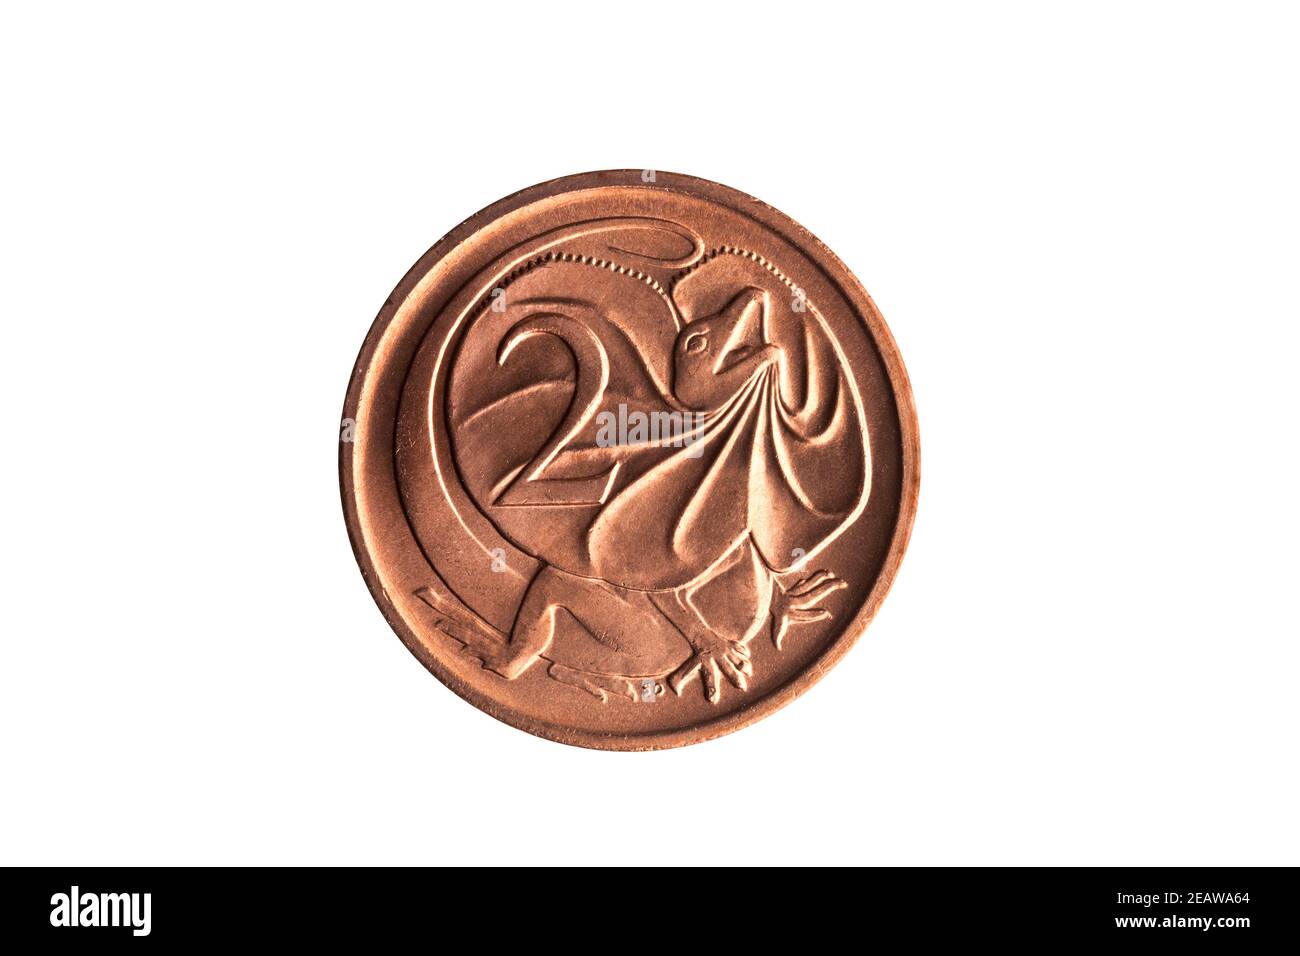 Australia moneta da due centesimi con immagine di un frill Lizard a collo tagliato e isolato Foto Stock